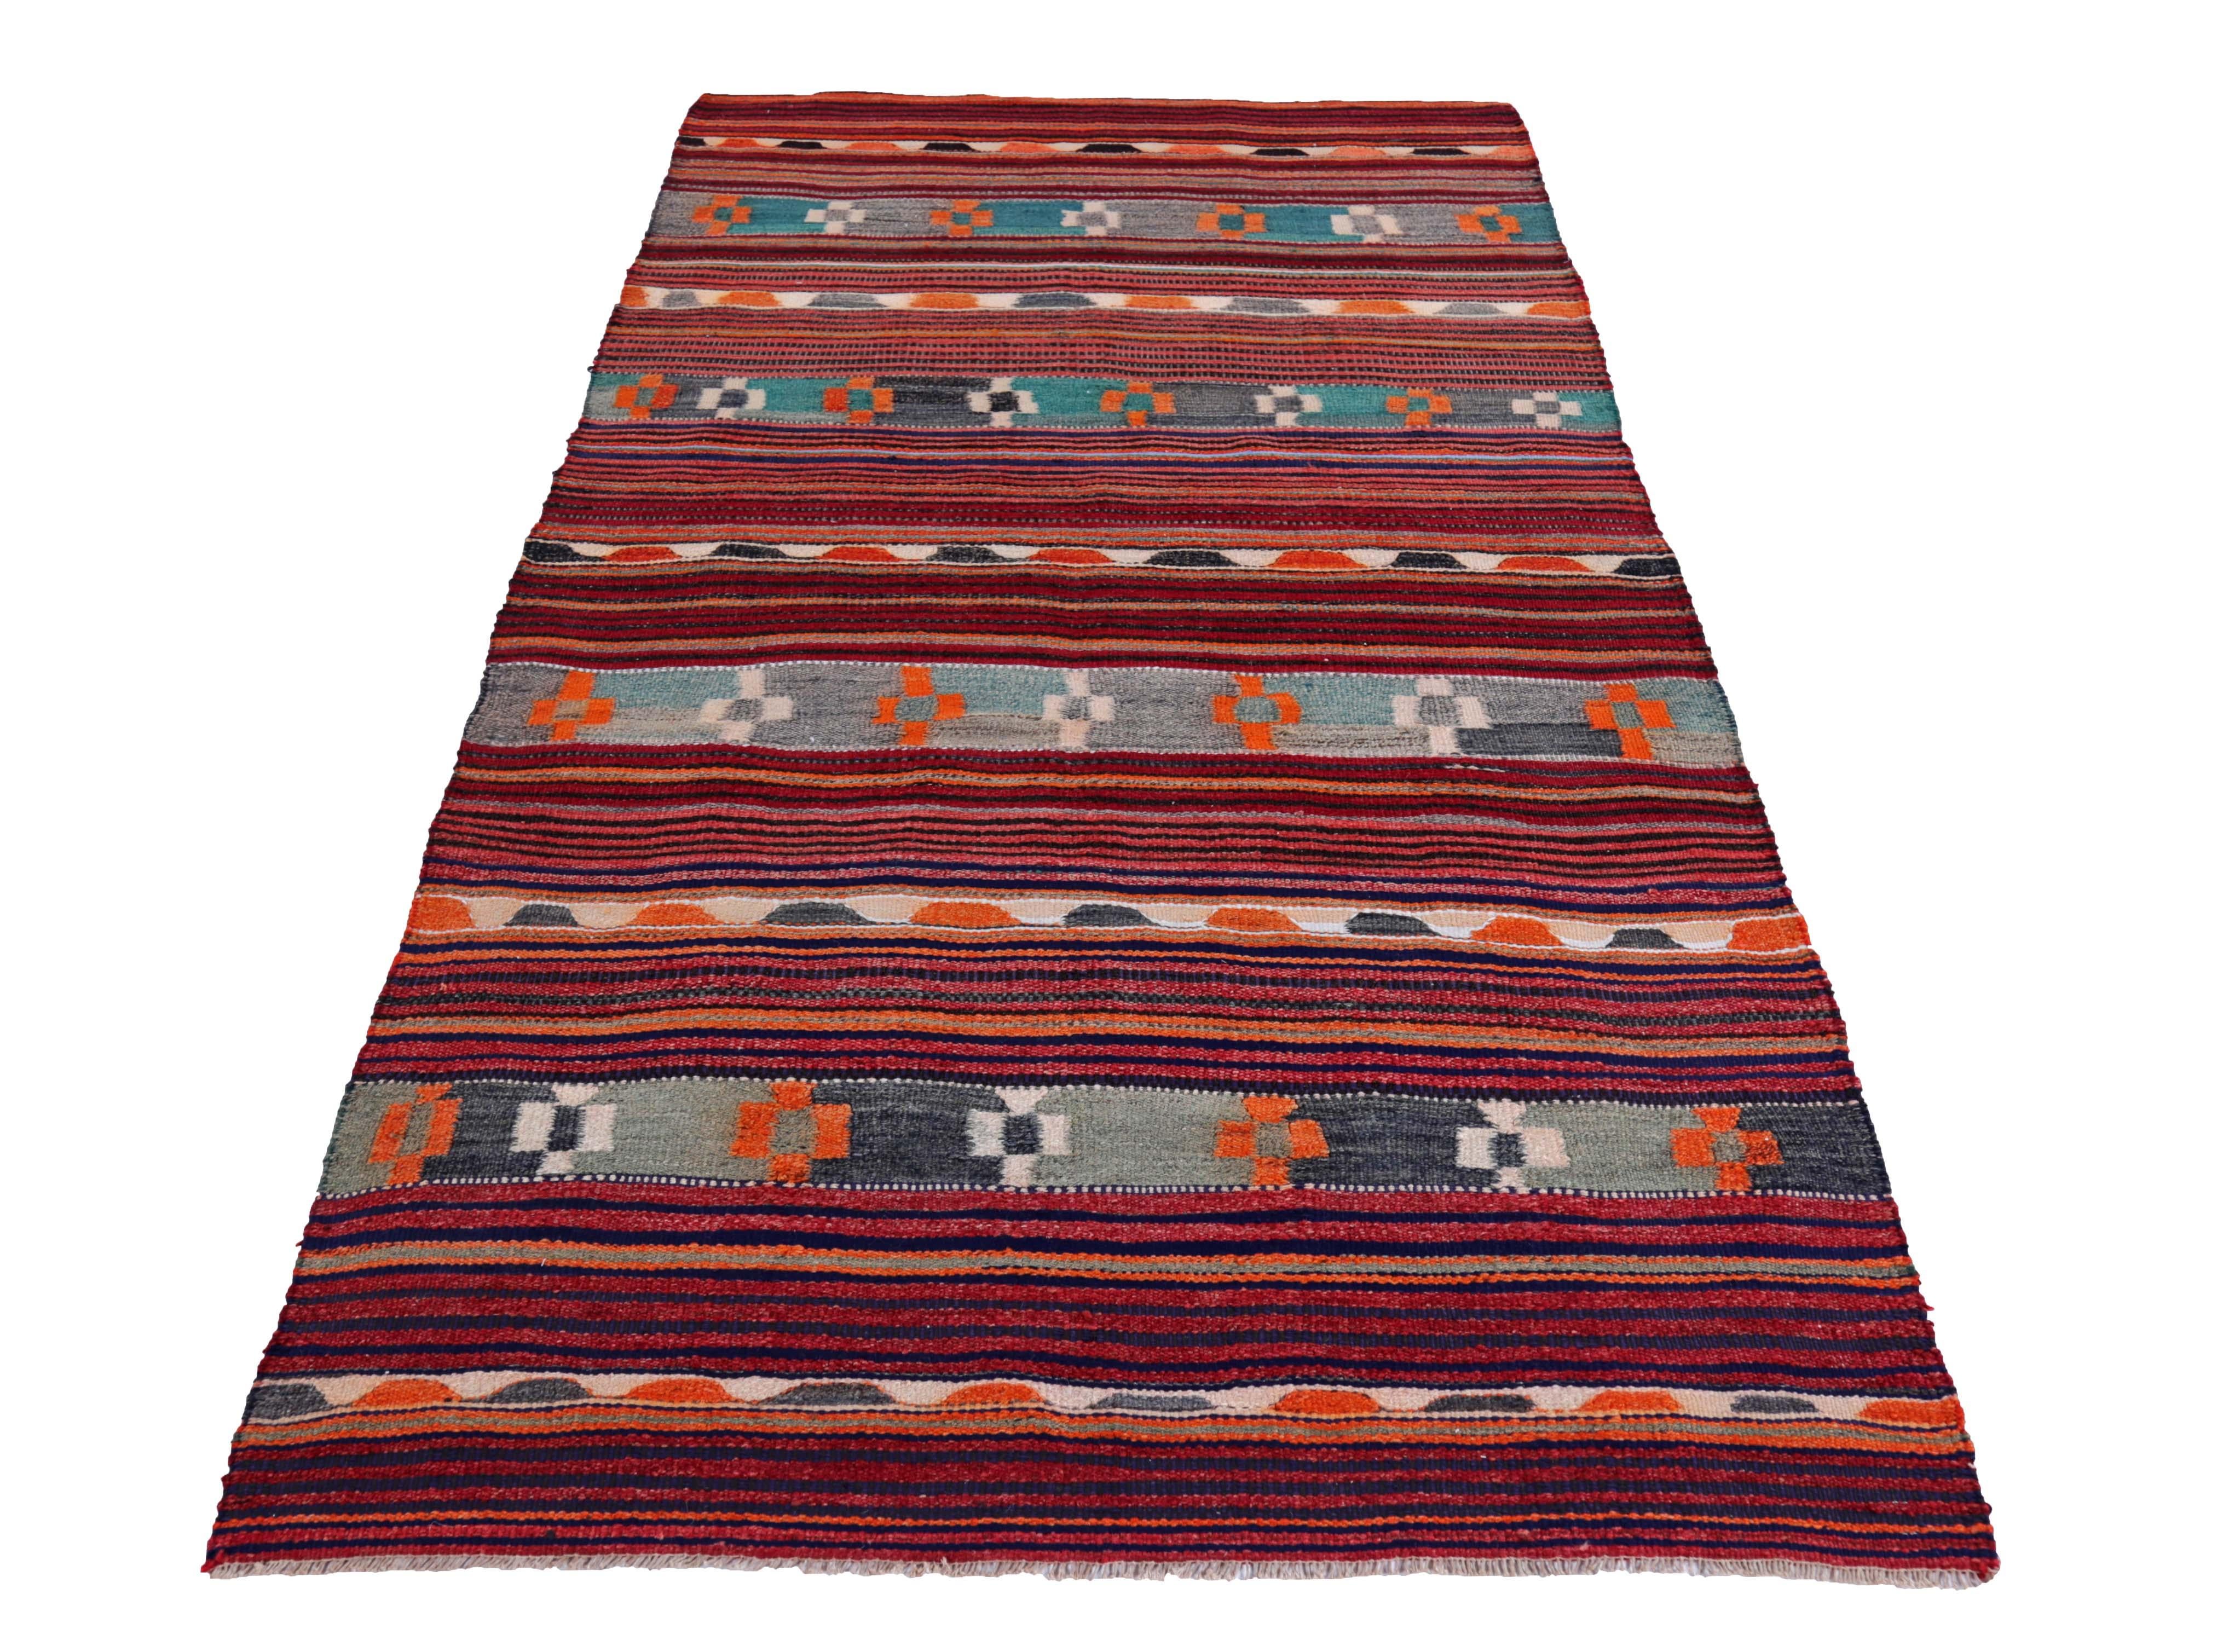 Türkischer Kelimteppich, handgewebt aus feinster Schafswolle und gefärbt mit natürlichen Pflanzenfarben, die für Menschen und Haustiere unbedenklich sind. Es handelt sich um ein traditionelles Kelim-Flachgewebe mit blauen, grünen und orangefarbenen